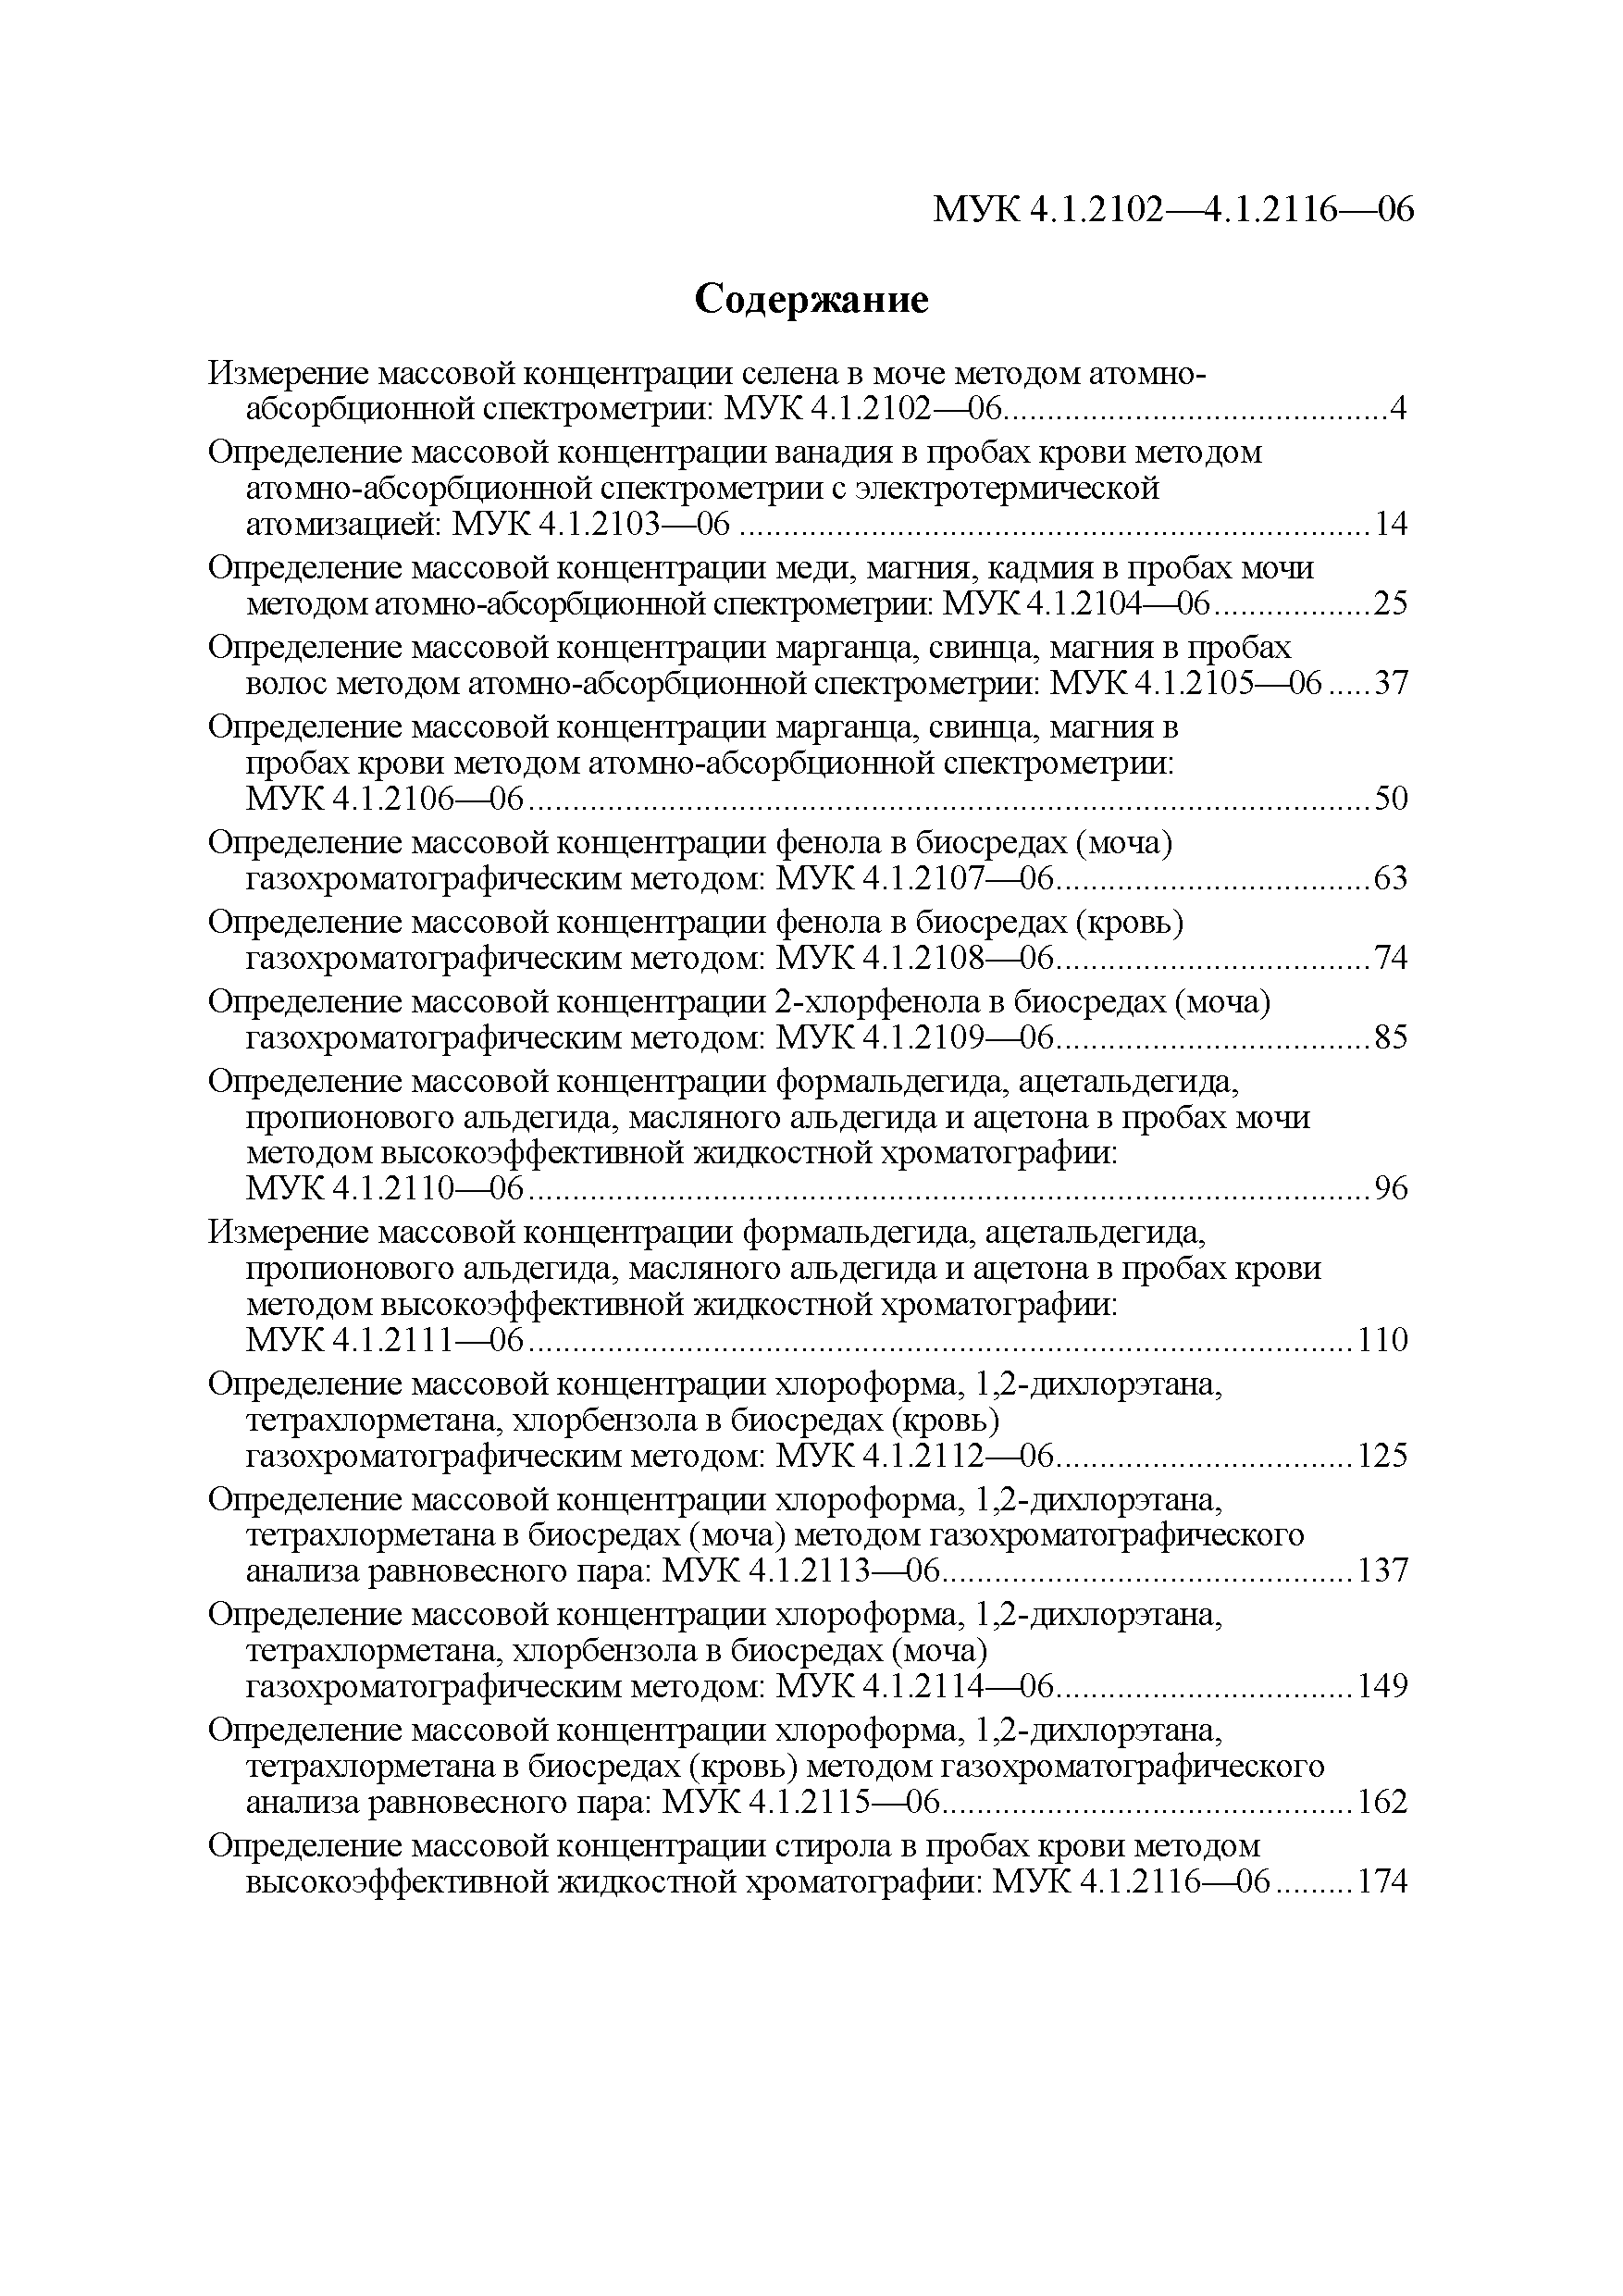 МУК 4.1.2107-06